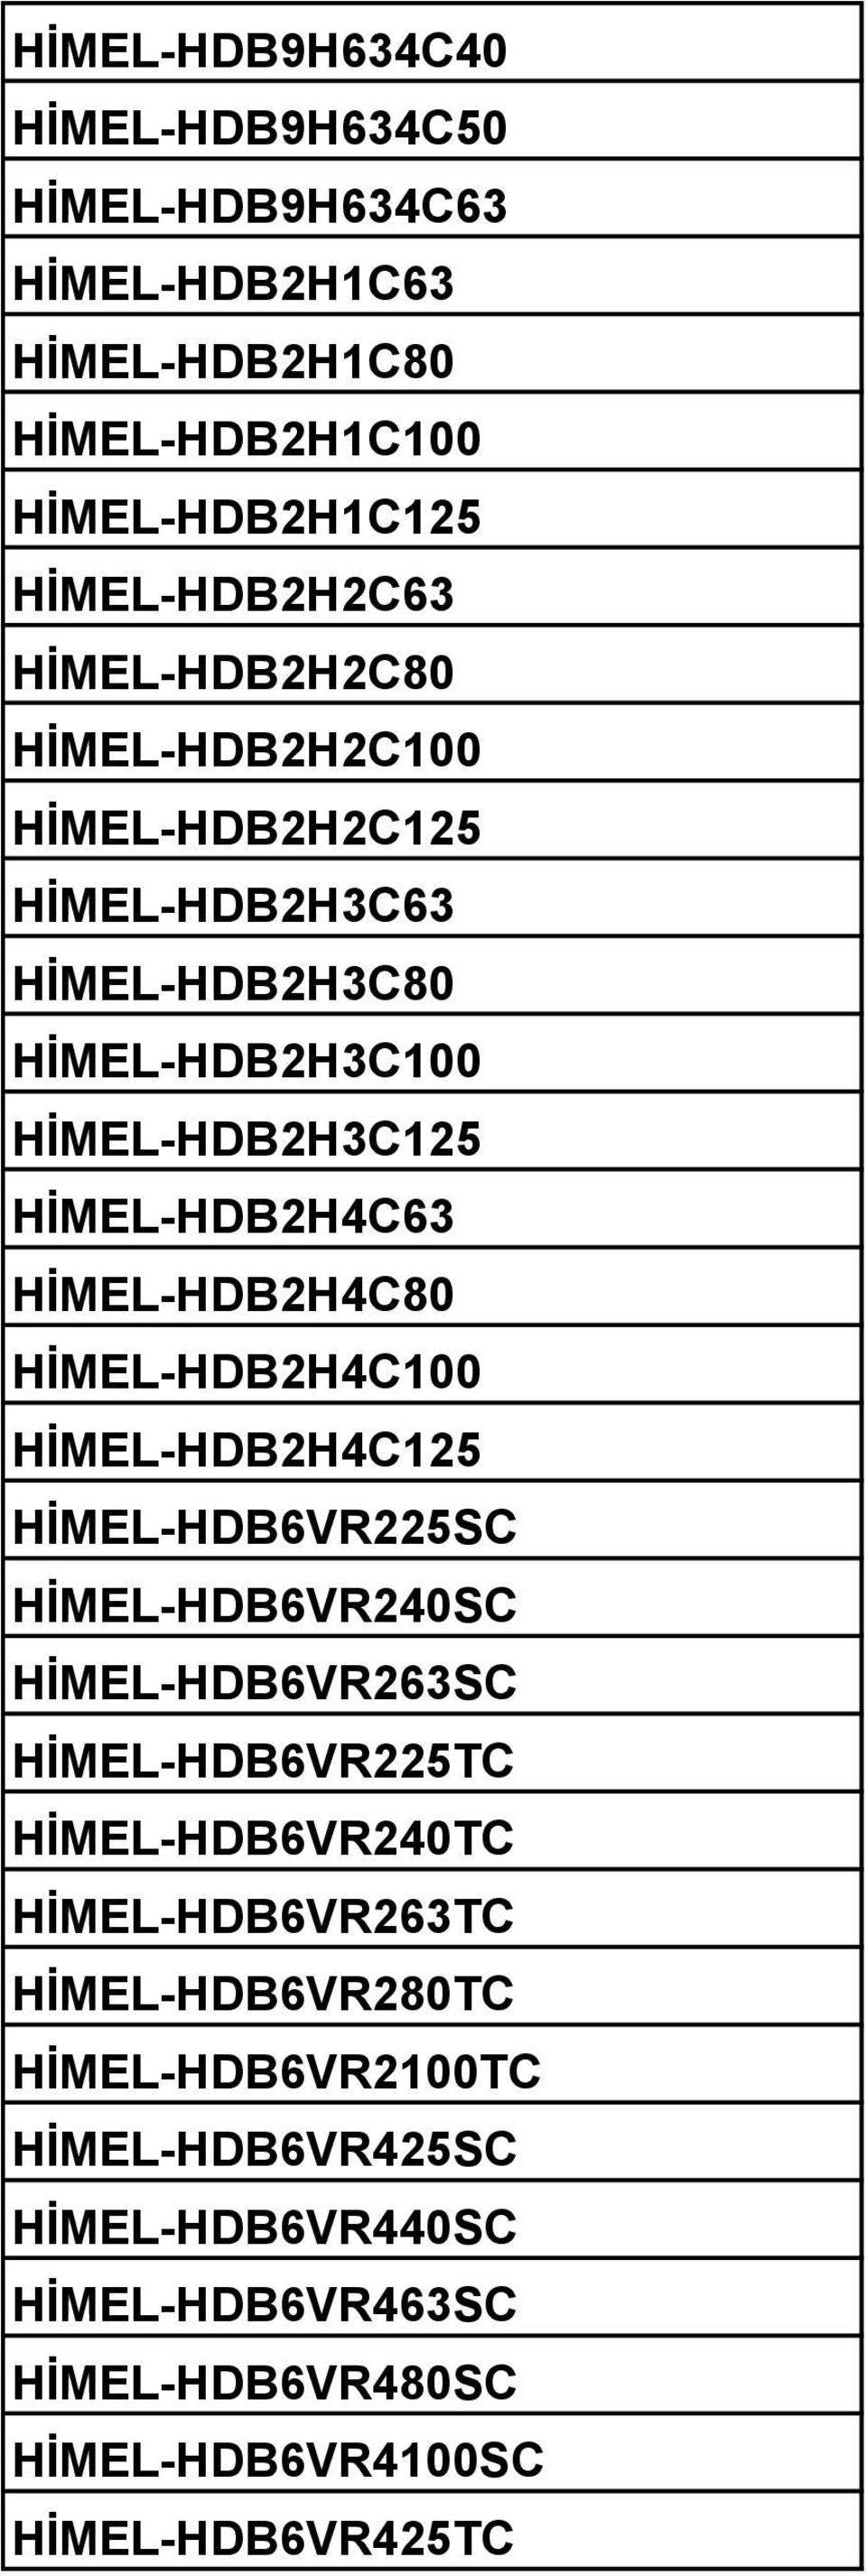 HİMEL-HDB2H4C80 HİMEL-HDB2H4C100 HİMEL-HDB2H4C125 HİMEL-HDB6VR225SC HİMEL-HDB6VR240SC HİMEL-HDB6VR263SC HİMEL-HDB6VR225TC HİMEL-HDB6VR240TC